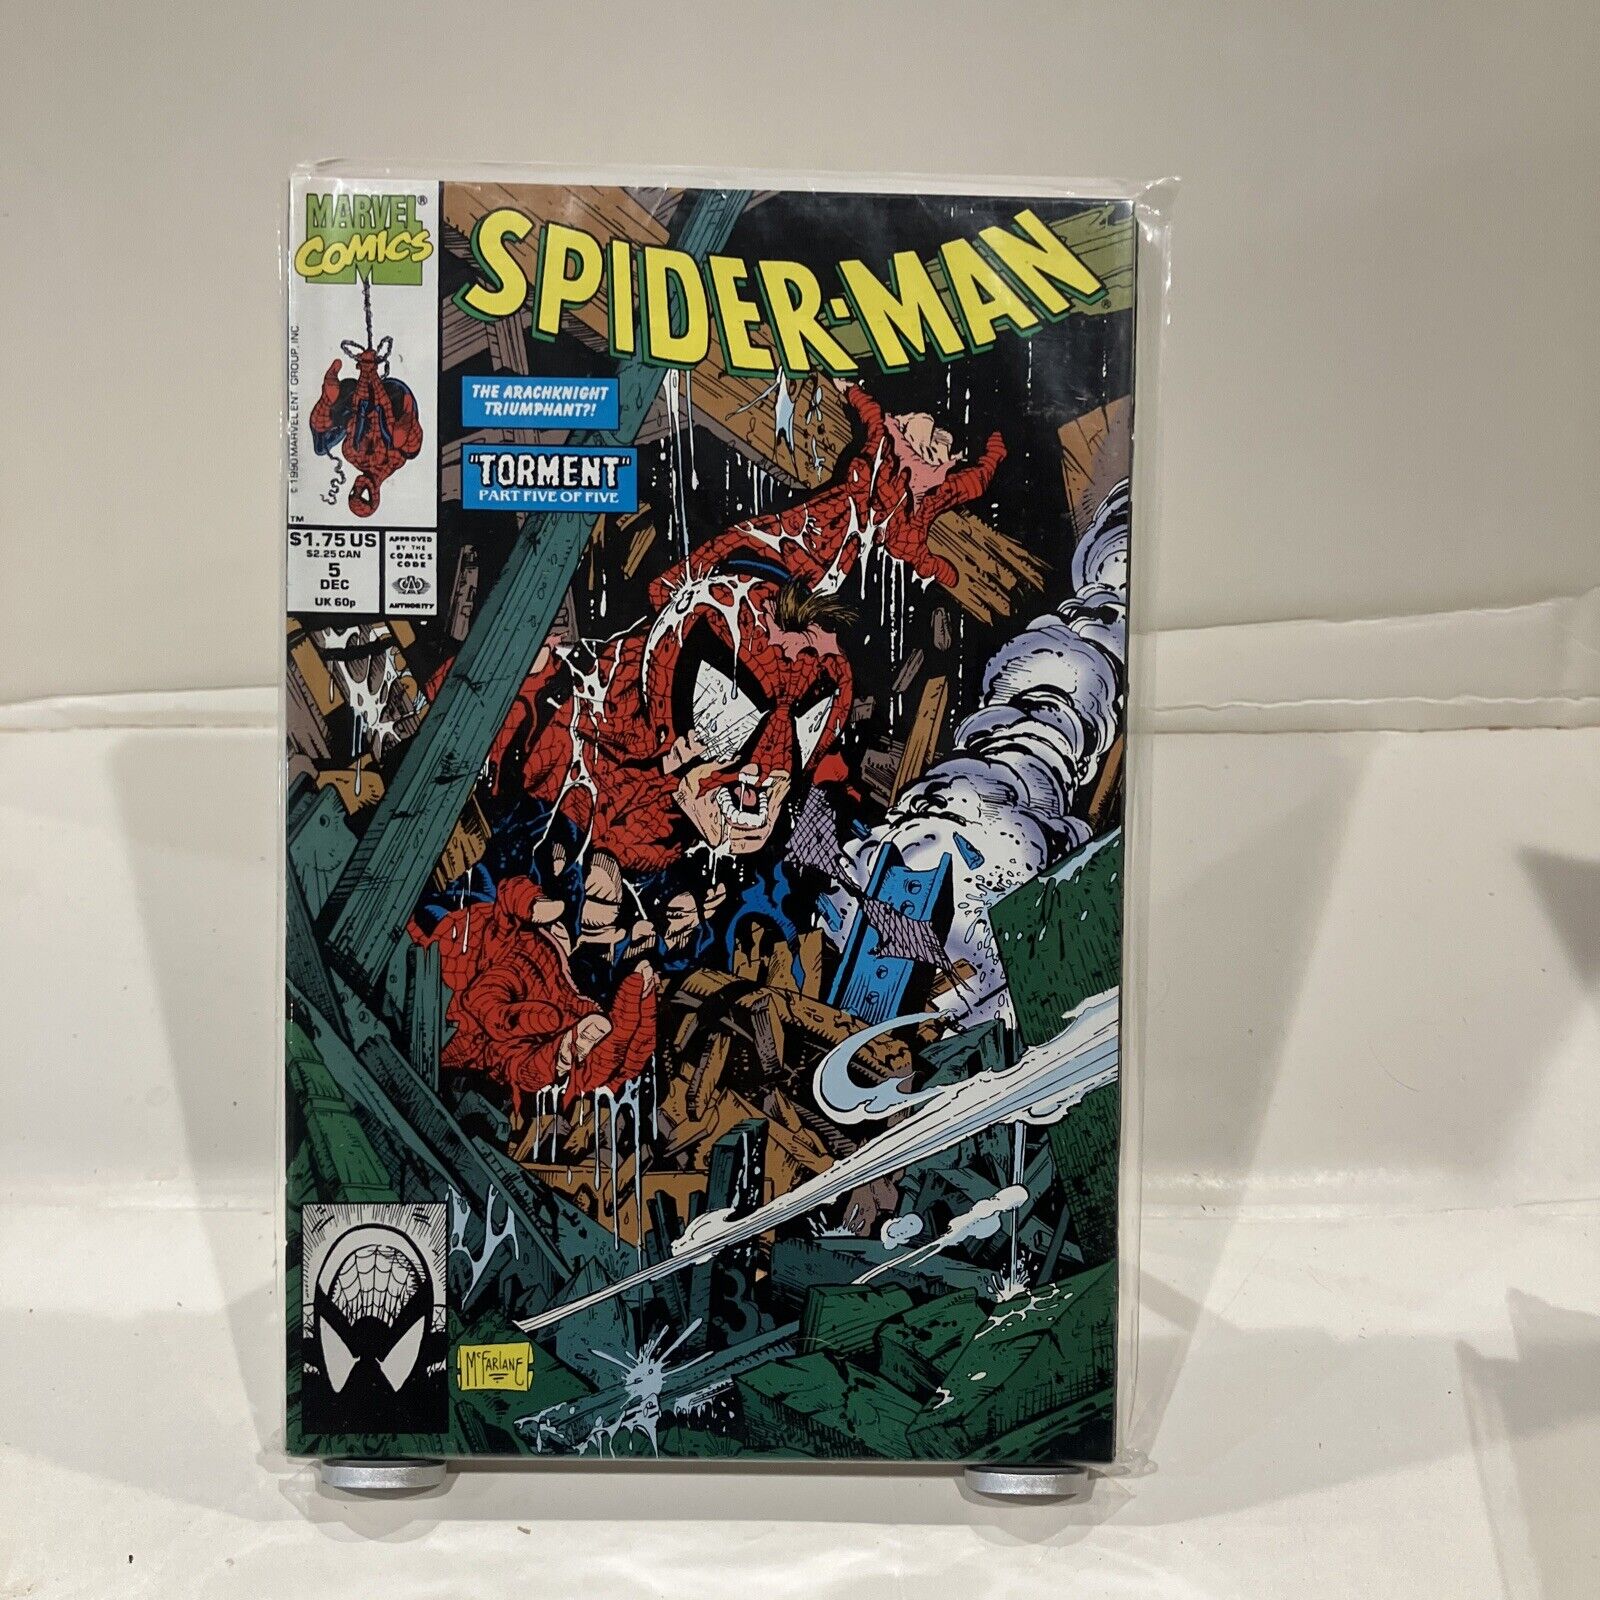 Spider-Man #5 (Marvel, December 1990)